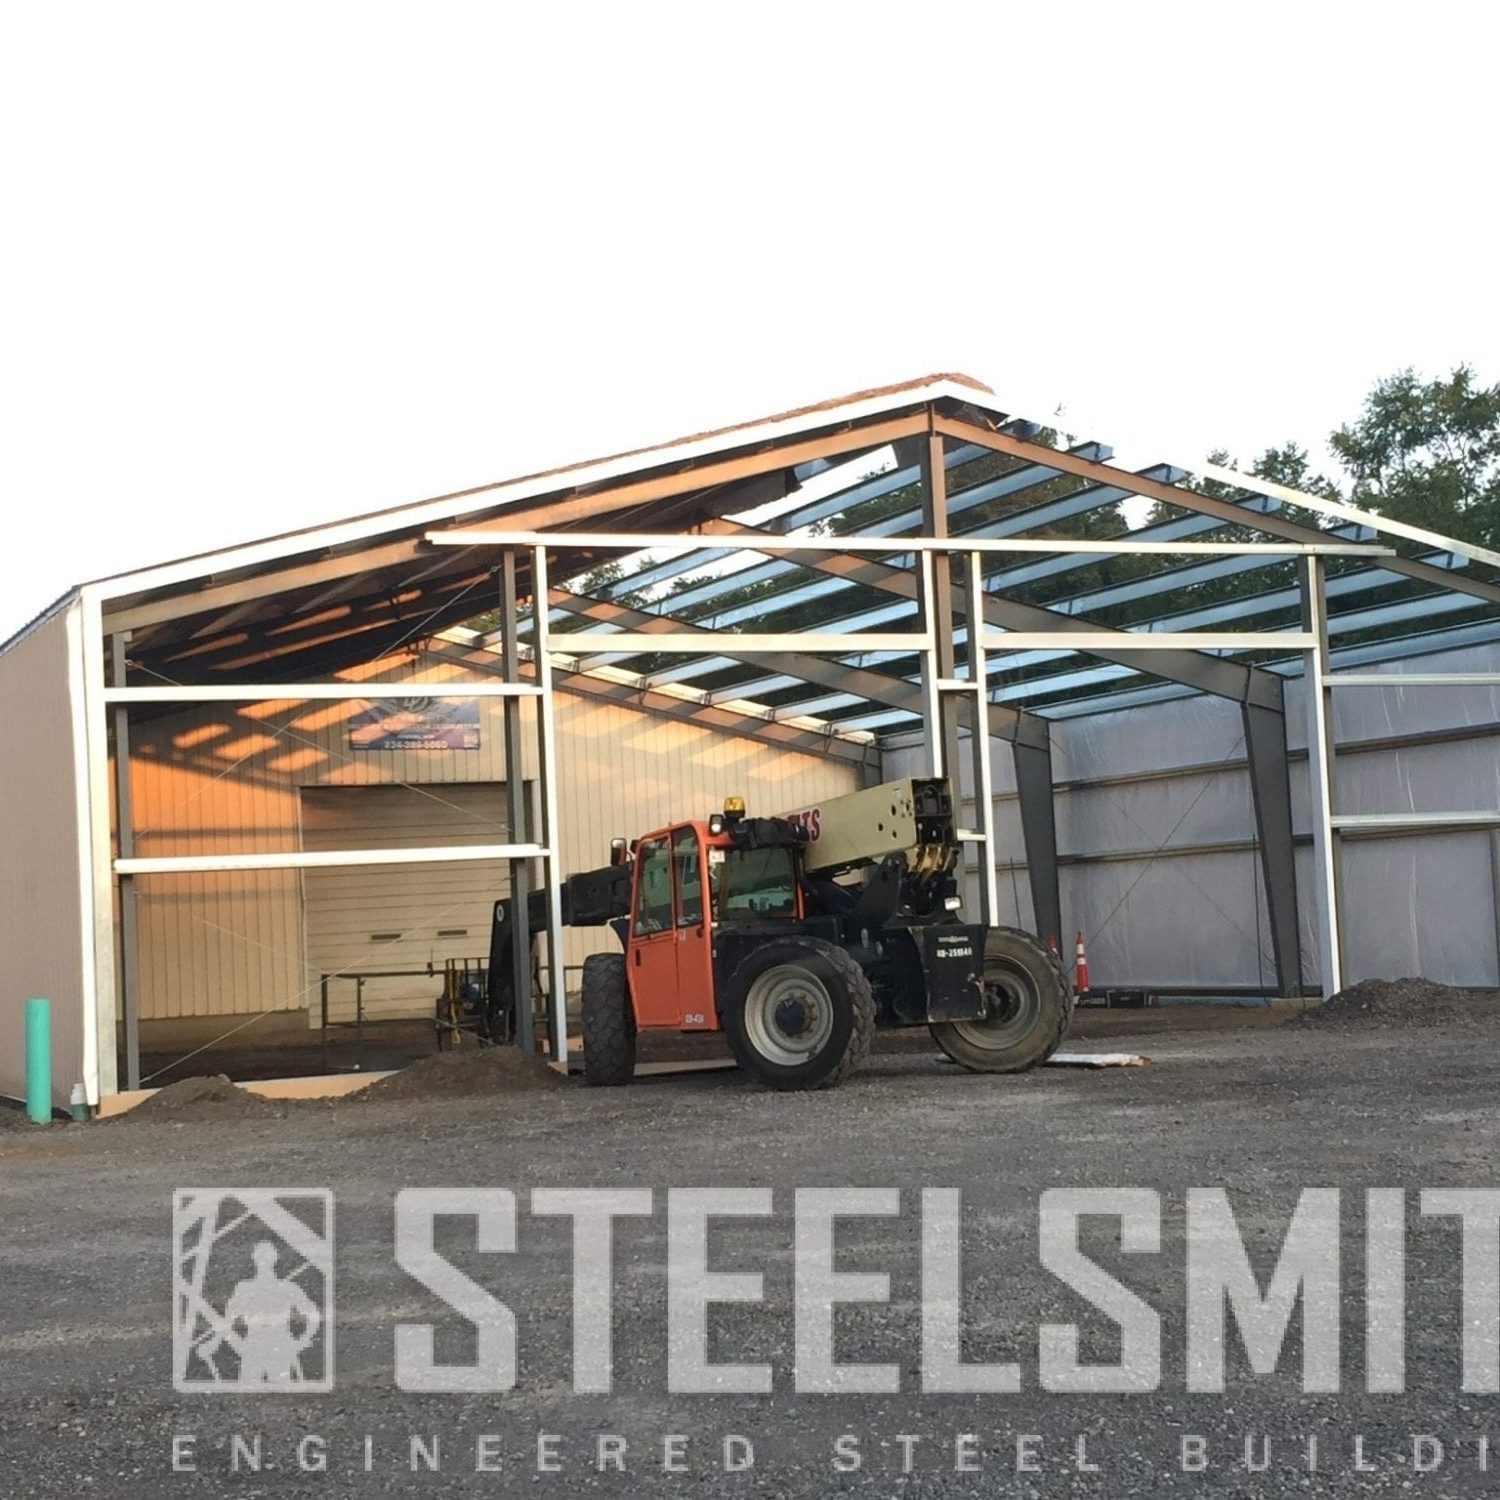 steelsmith steel buildings